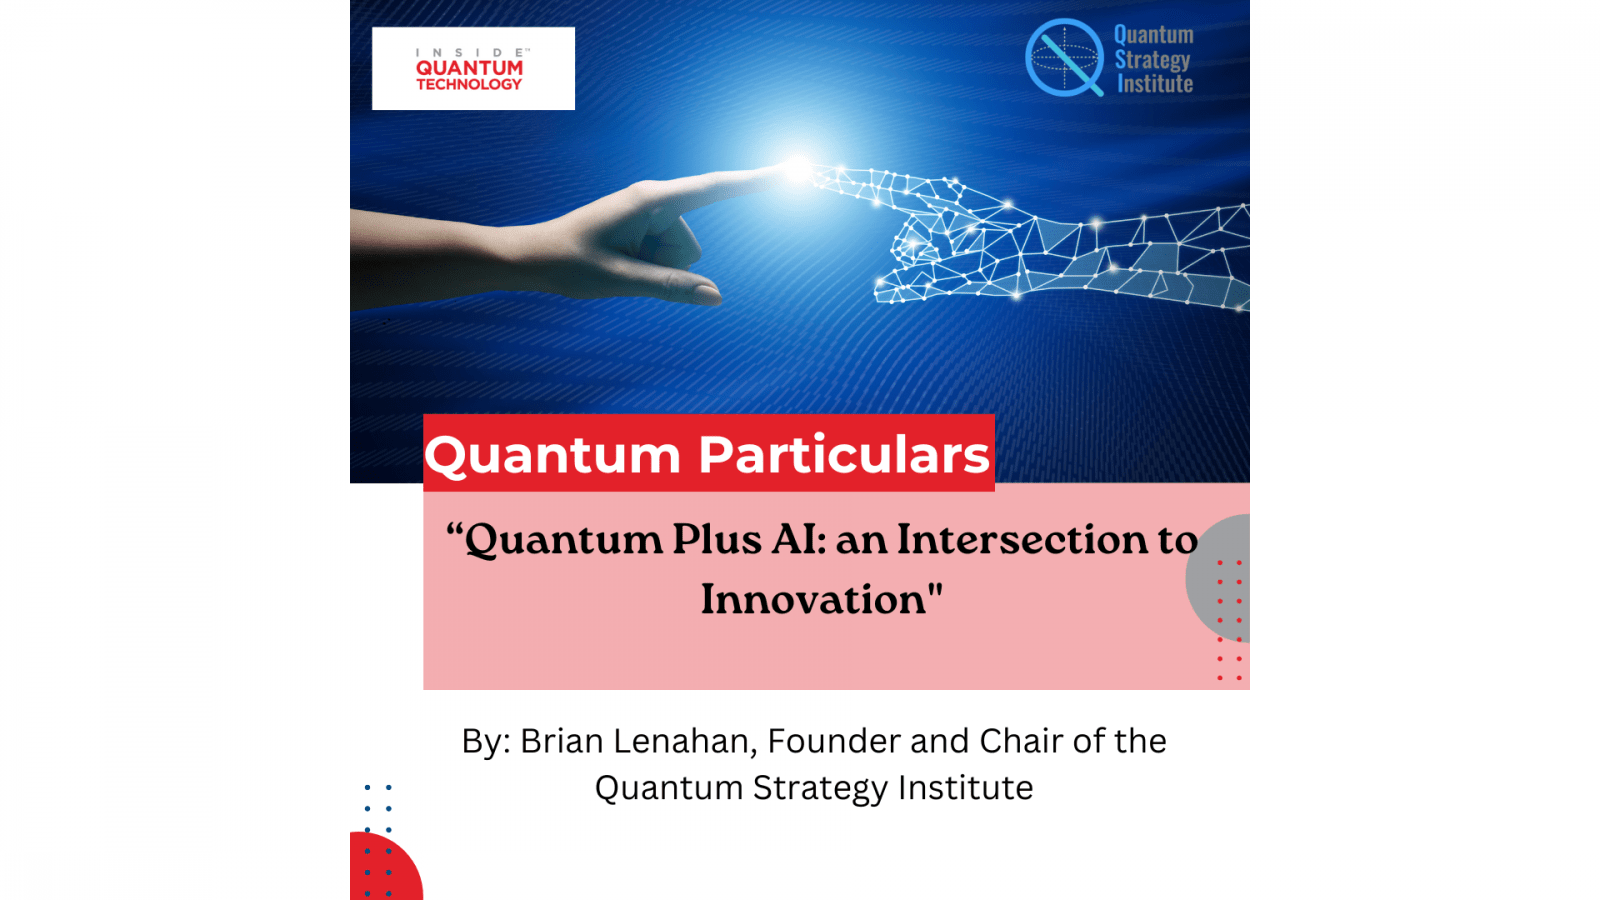 एक नए अतिथि लेख में, क्वांटम स्ट्रैटेजी इंस्टीट्यूट के संस्थापक और अध्यक्ष ब्रायन लेनाहन ने एआई और क्वांटम कंप्यूटिंग के बीच अंतरसंबंध पर चर्चा की है।